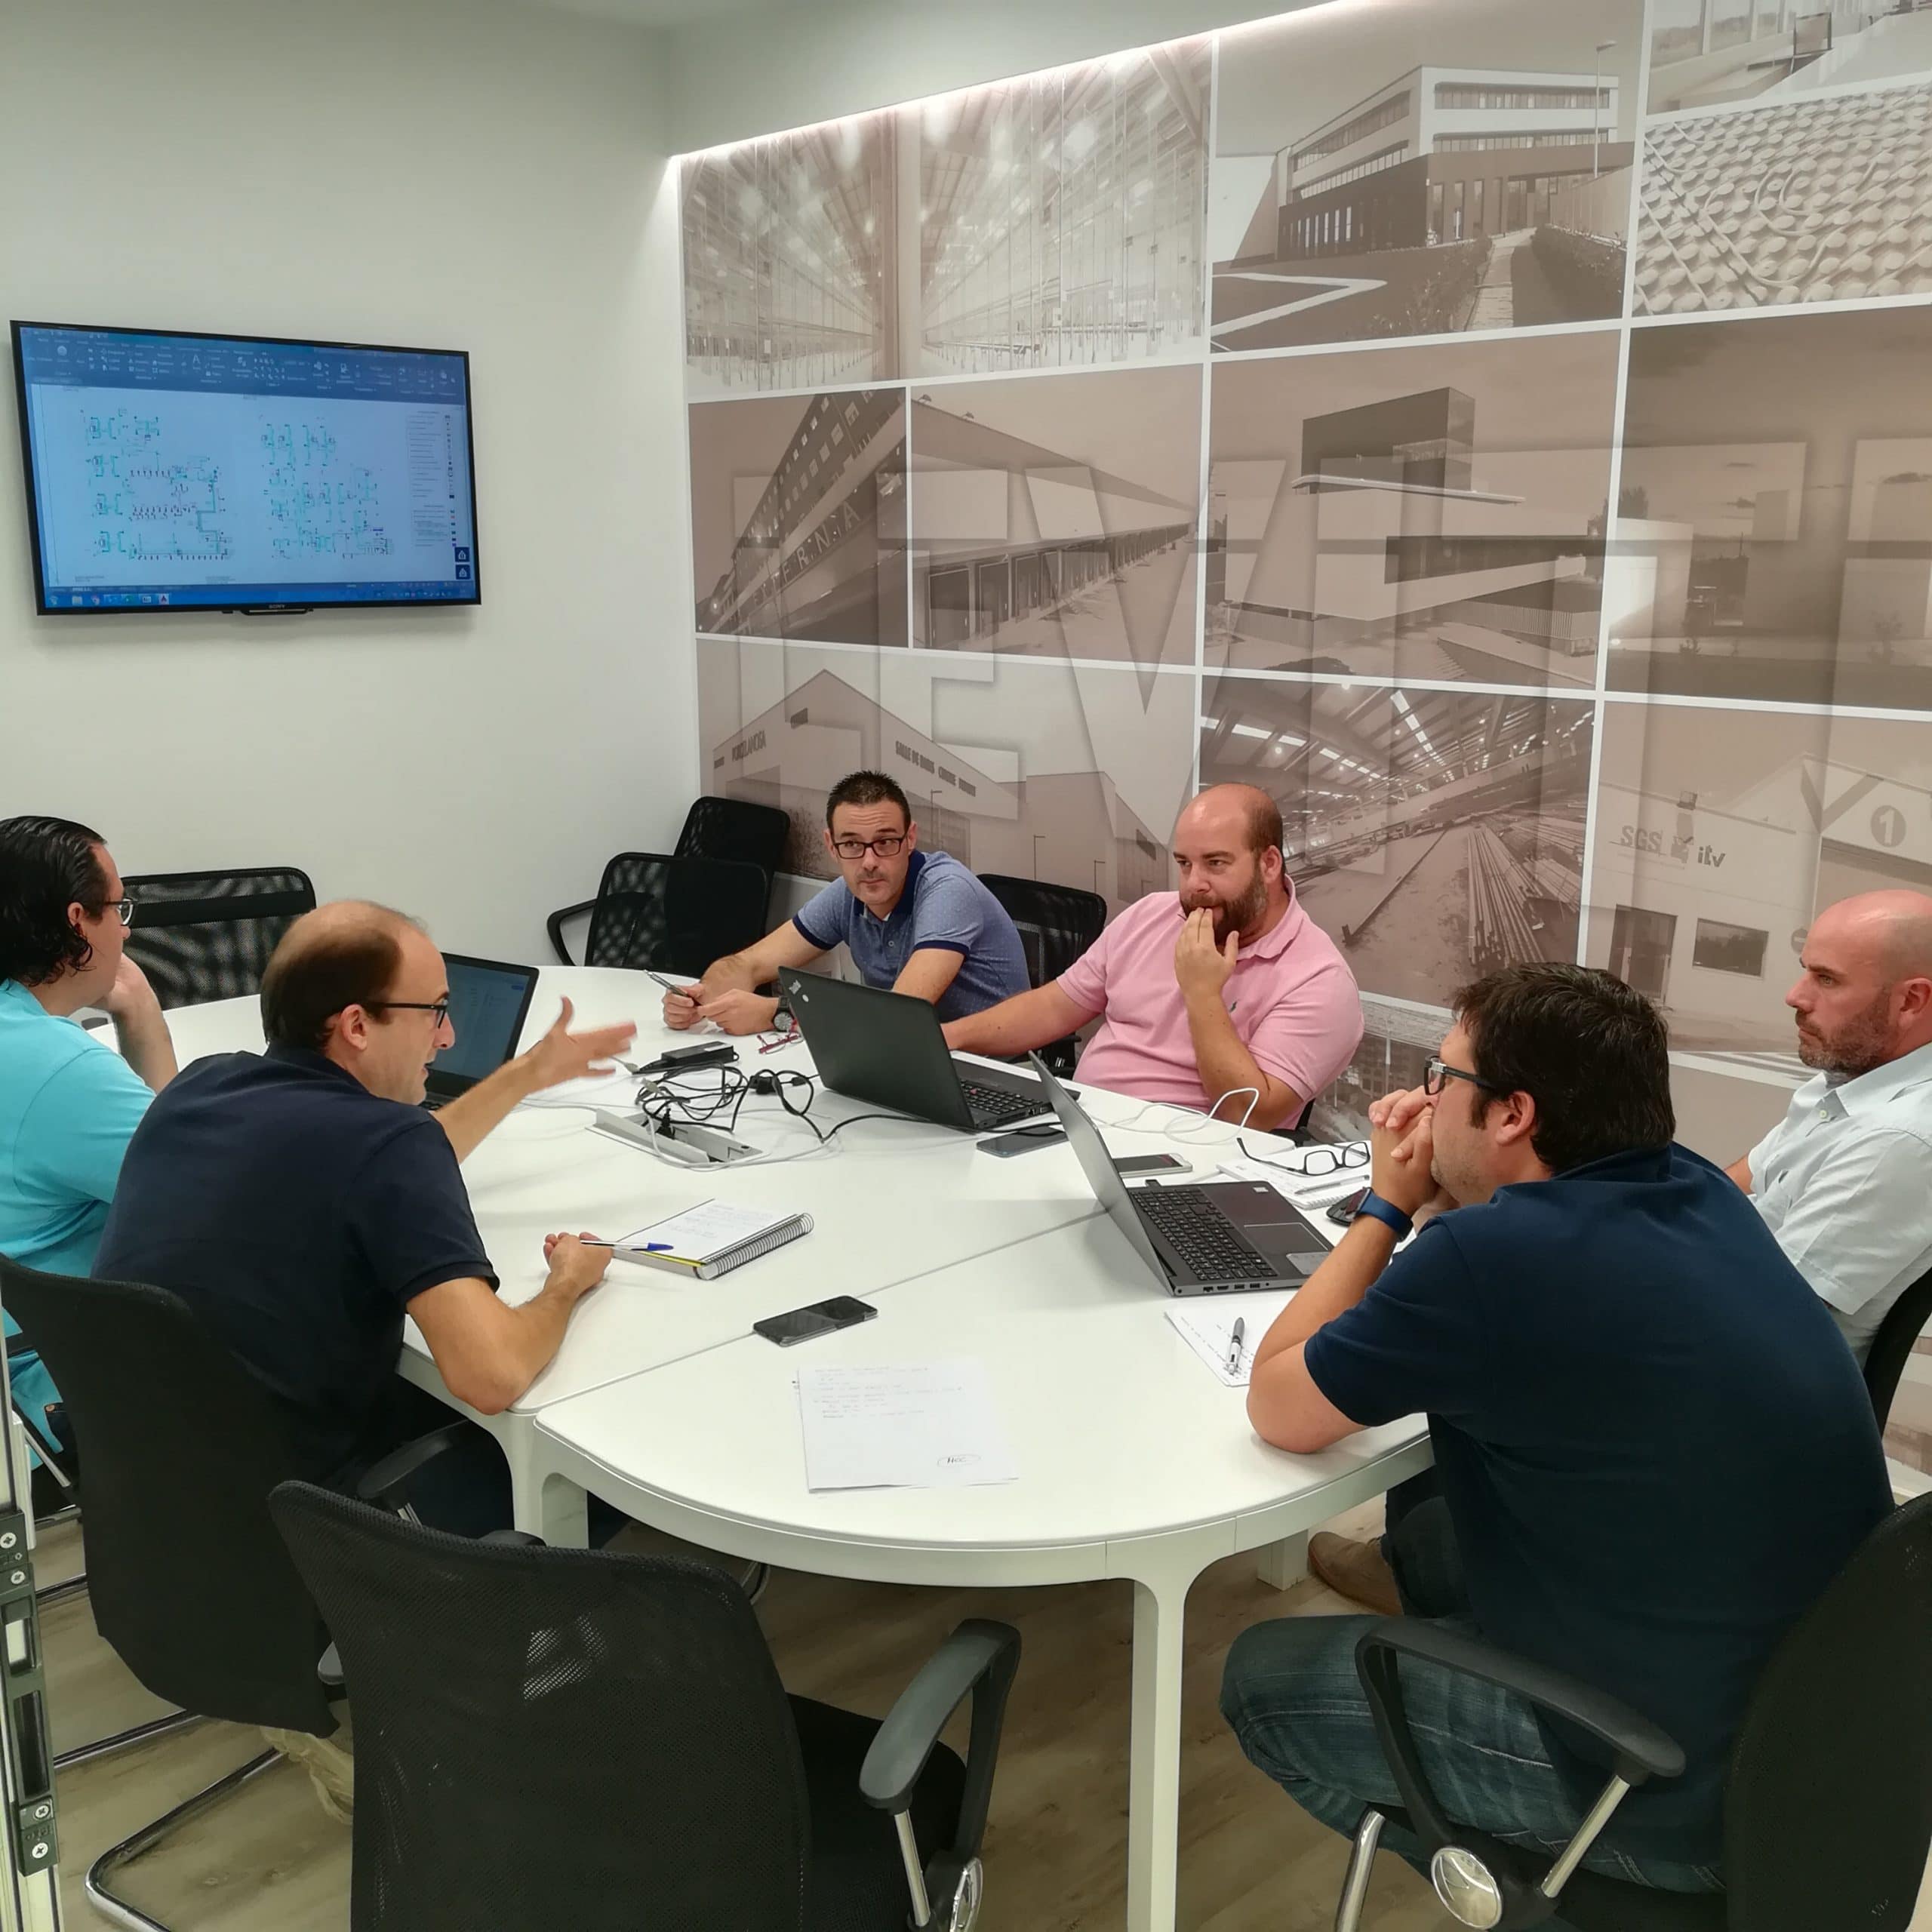 Un equipo con alta cualificación diseña los proyectos en la oficina técnica de Zaragoza